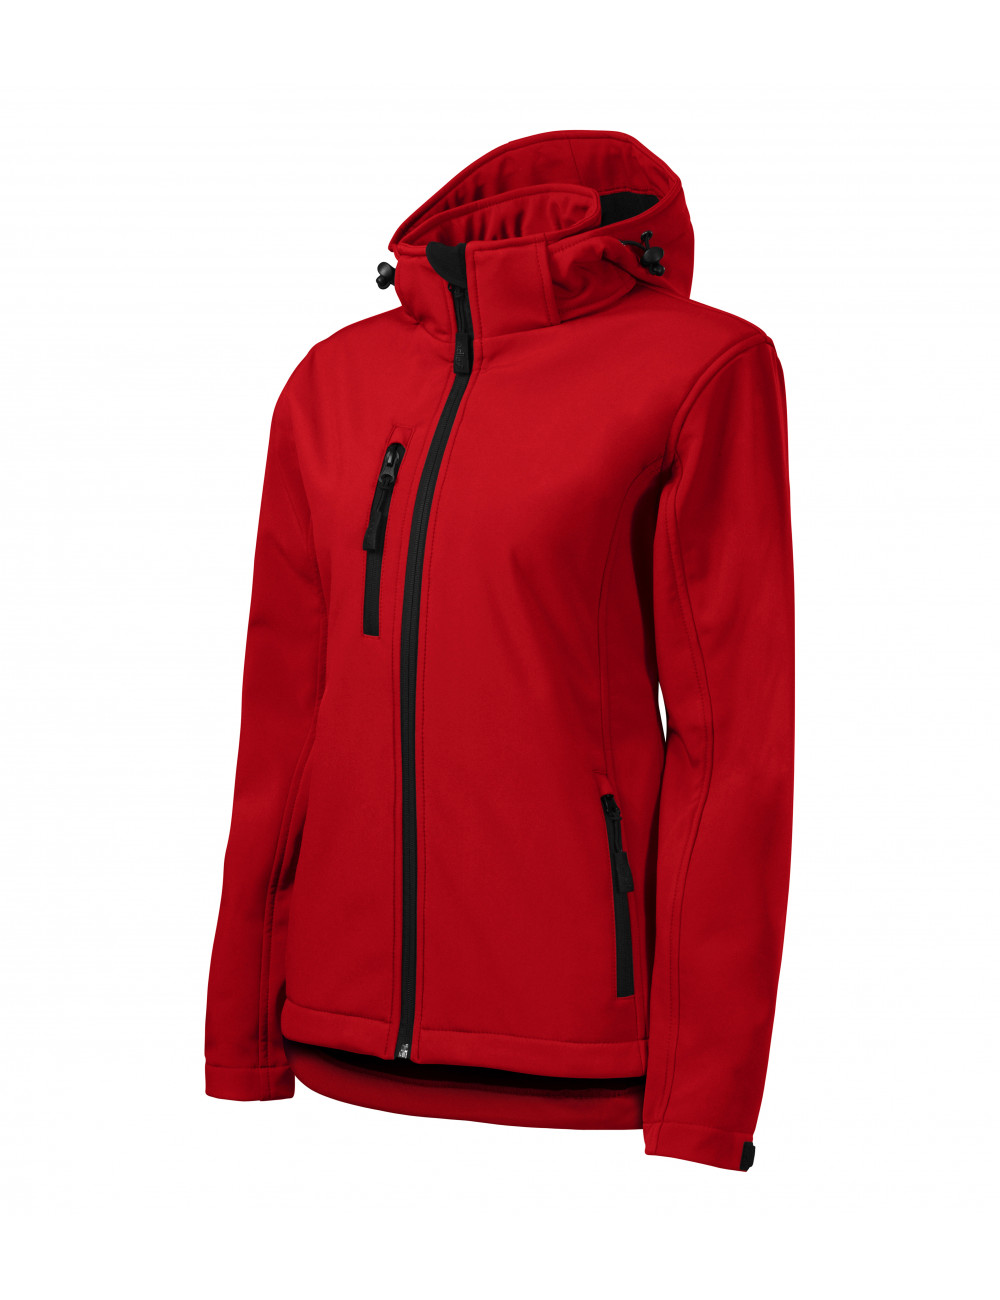 Softshell jacket for women performance 521 red Adler Malfini